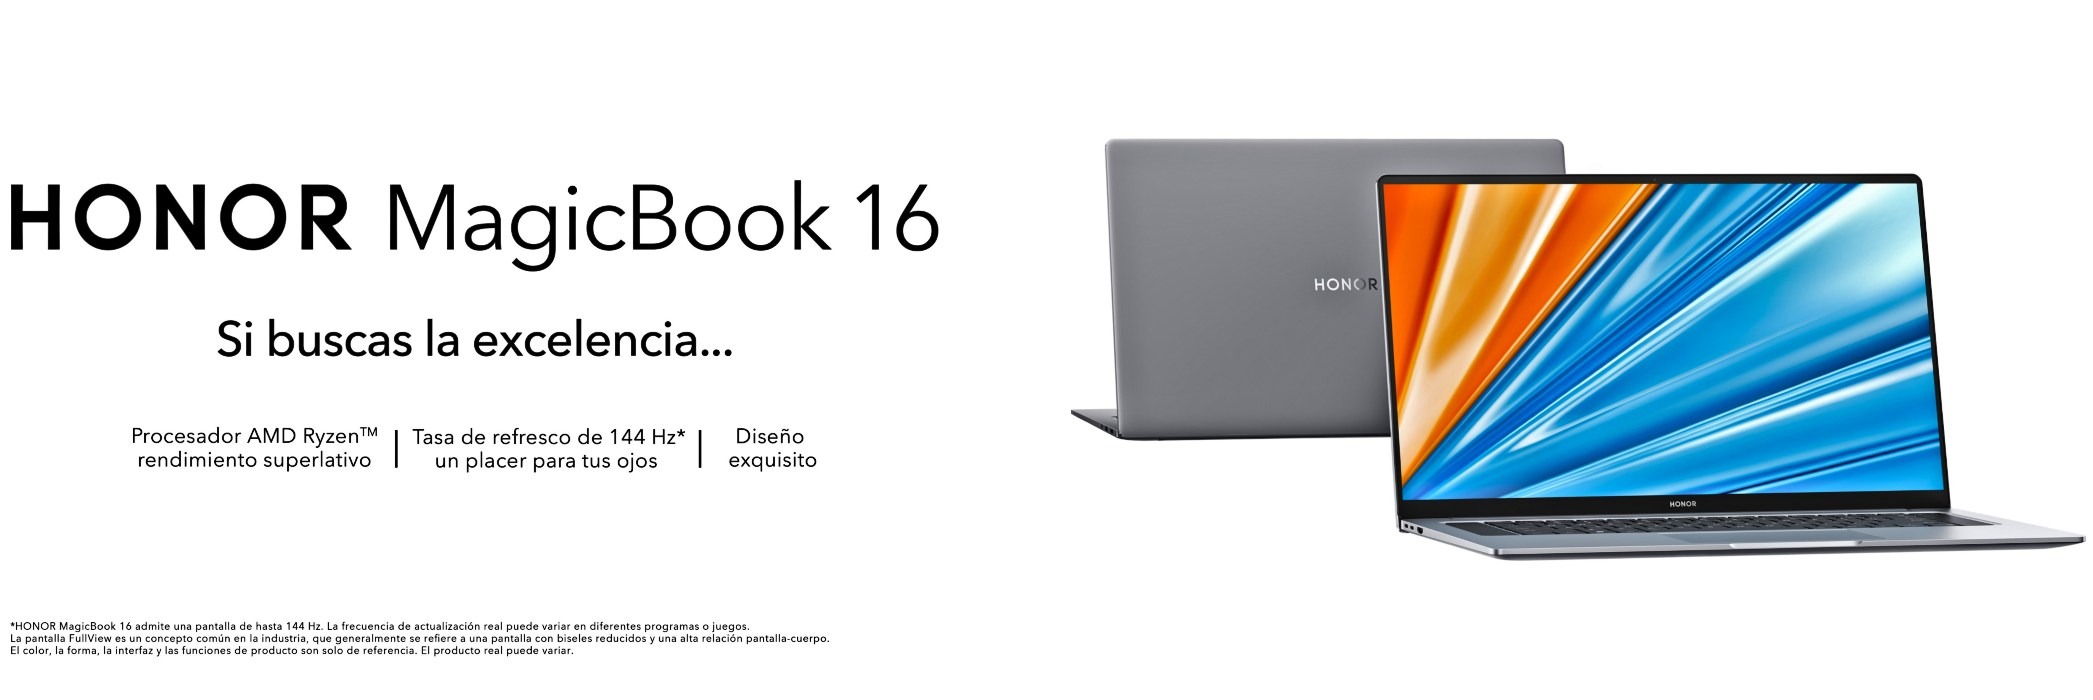 HONOR MagicBook 16, nuevo portátil con productividad inigualable y diseño premium